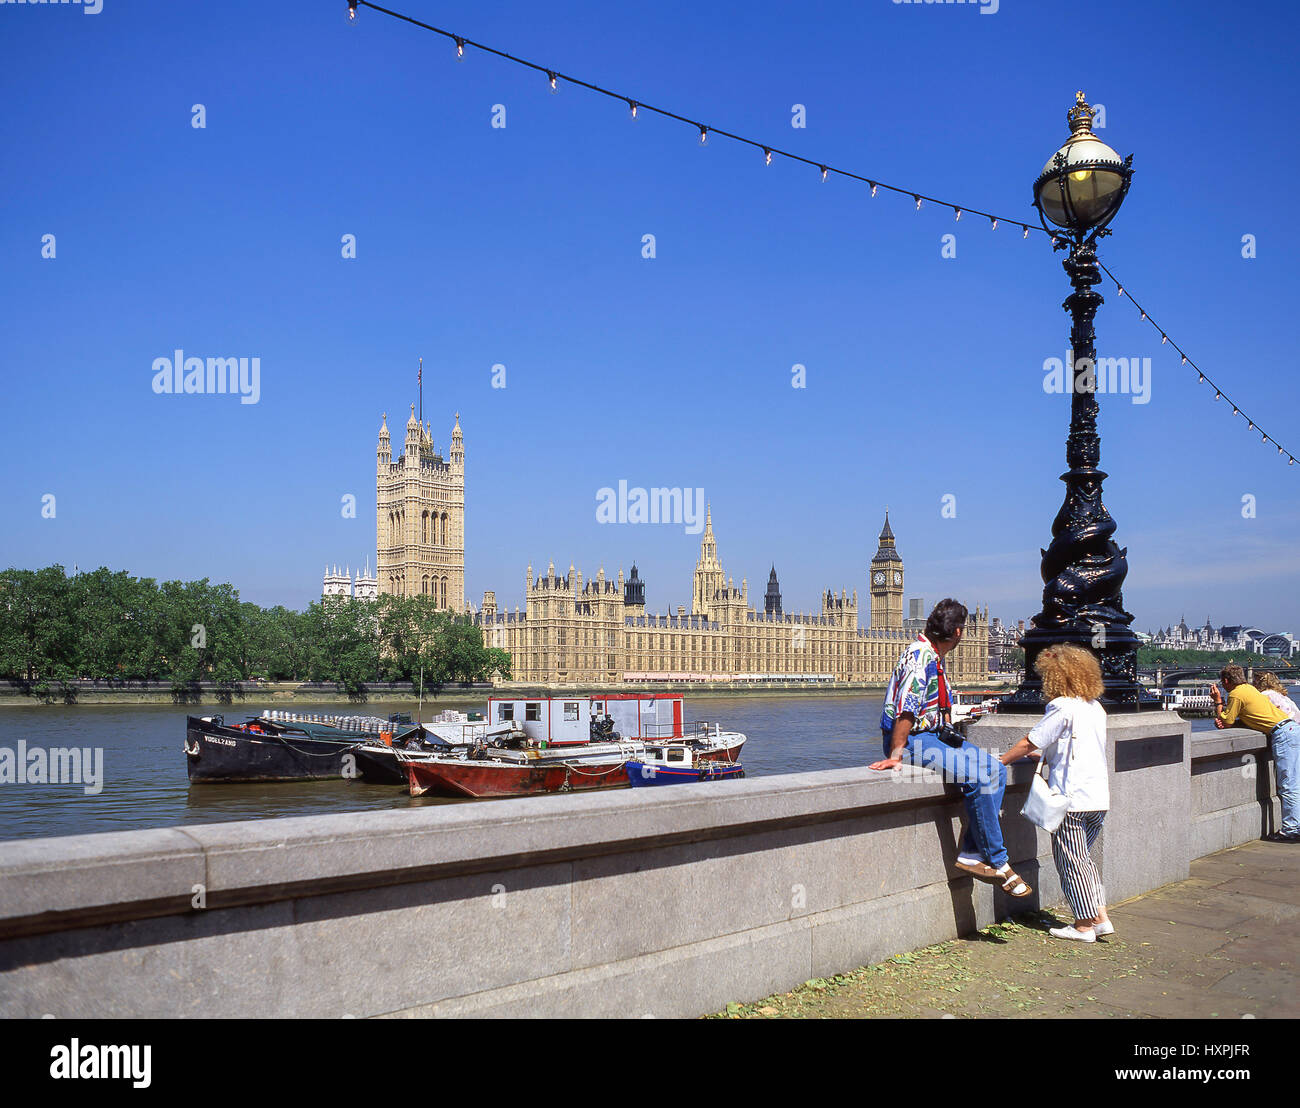 Chambres du Parlement et à partir de la rive sud de la rivière Thames, London Borough of Lambeth, Greater London, Angleterre, Royaume-Uni Banque D'Images